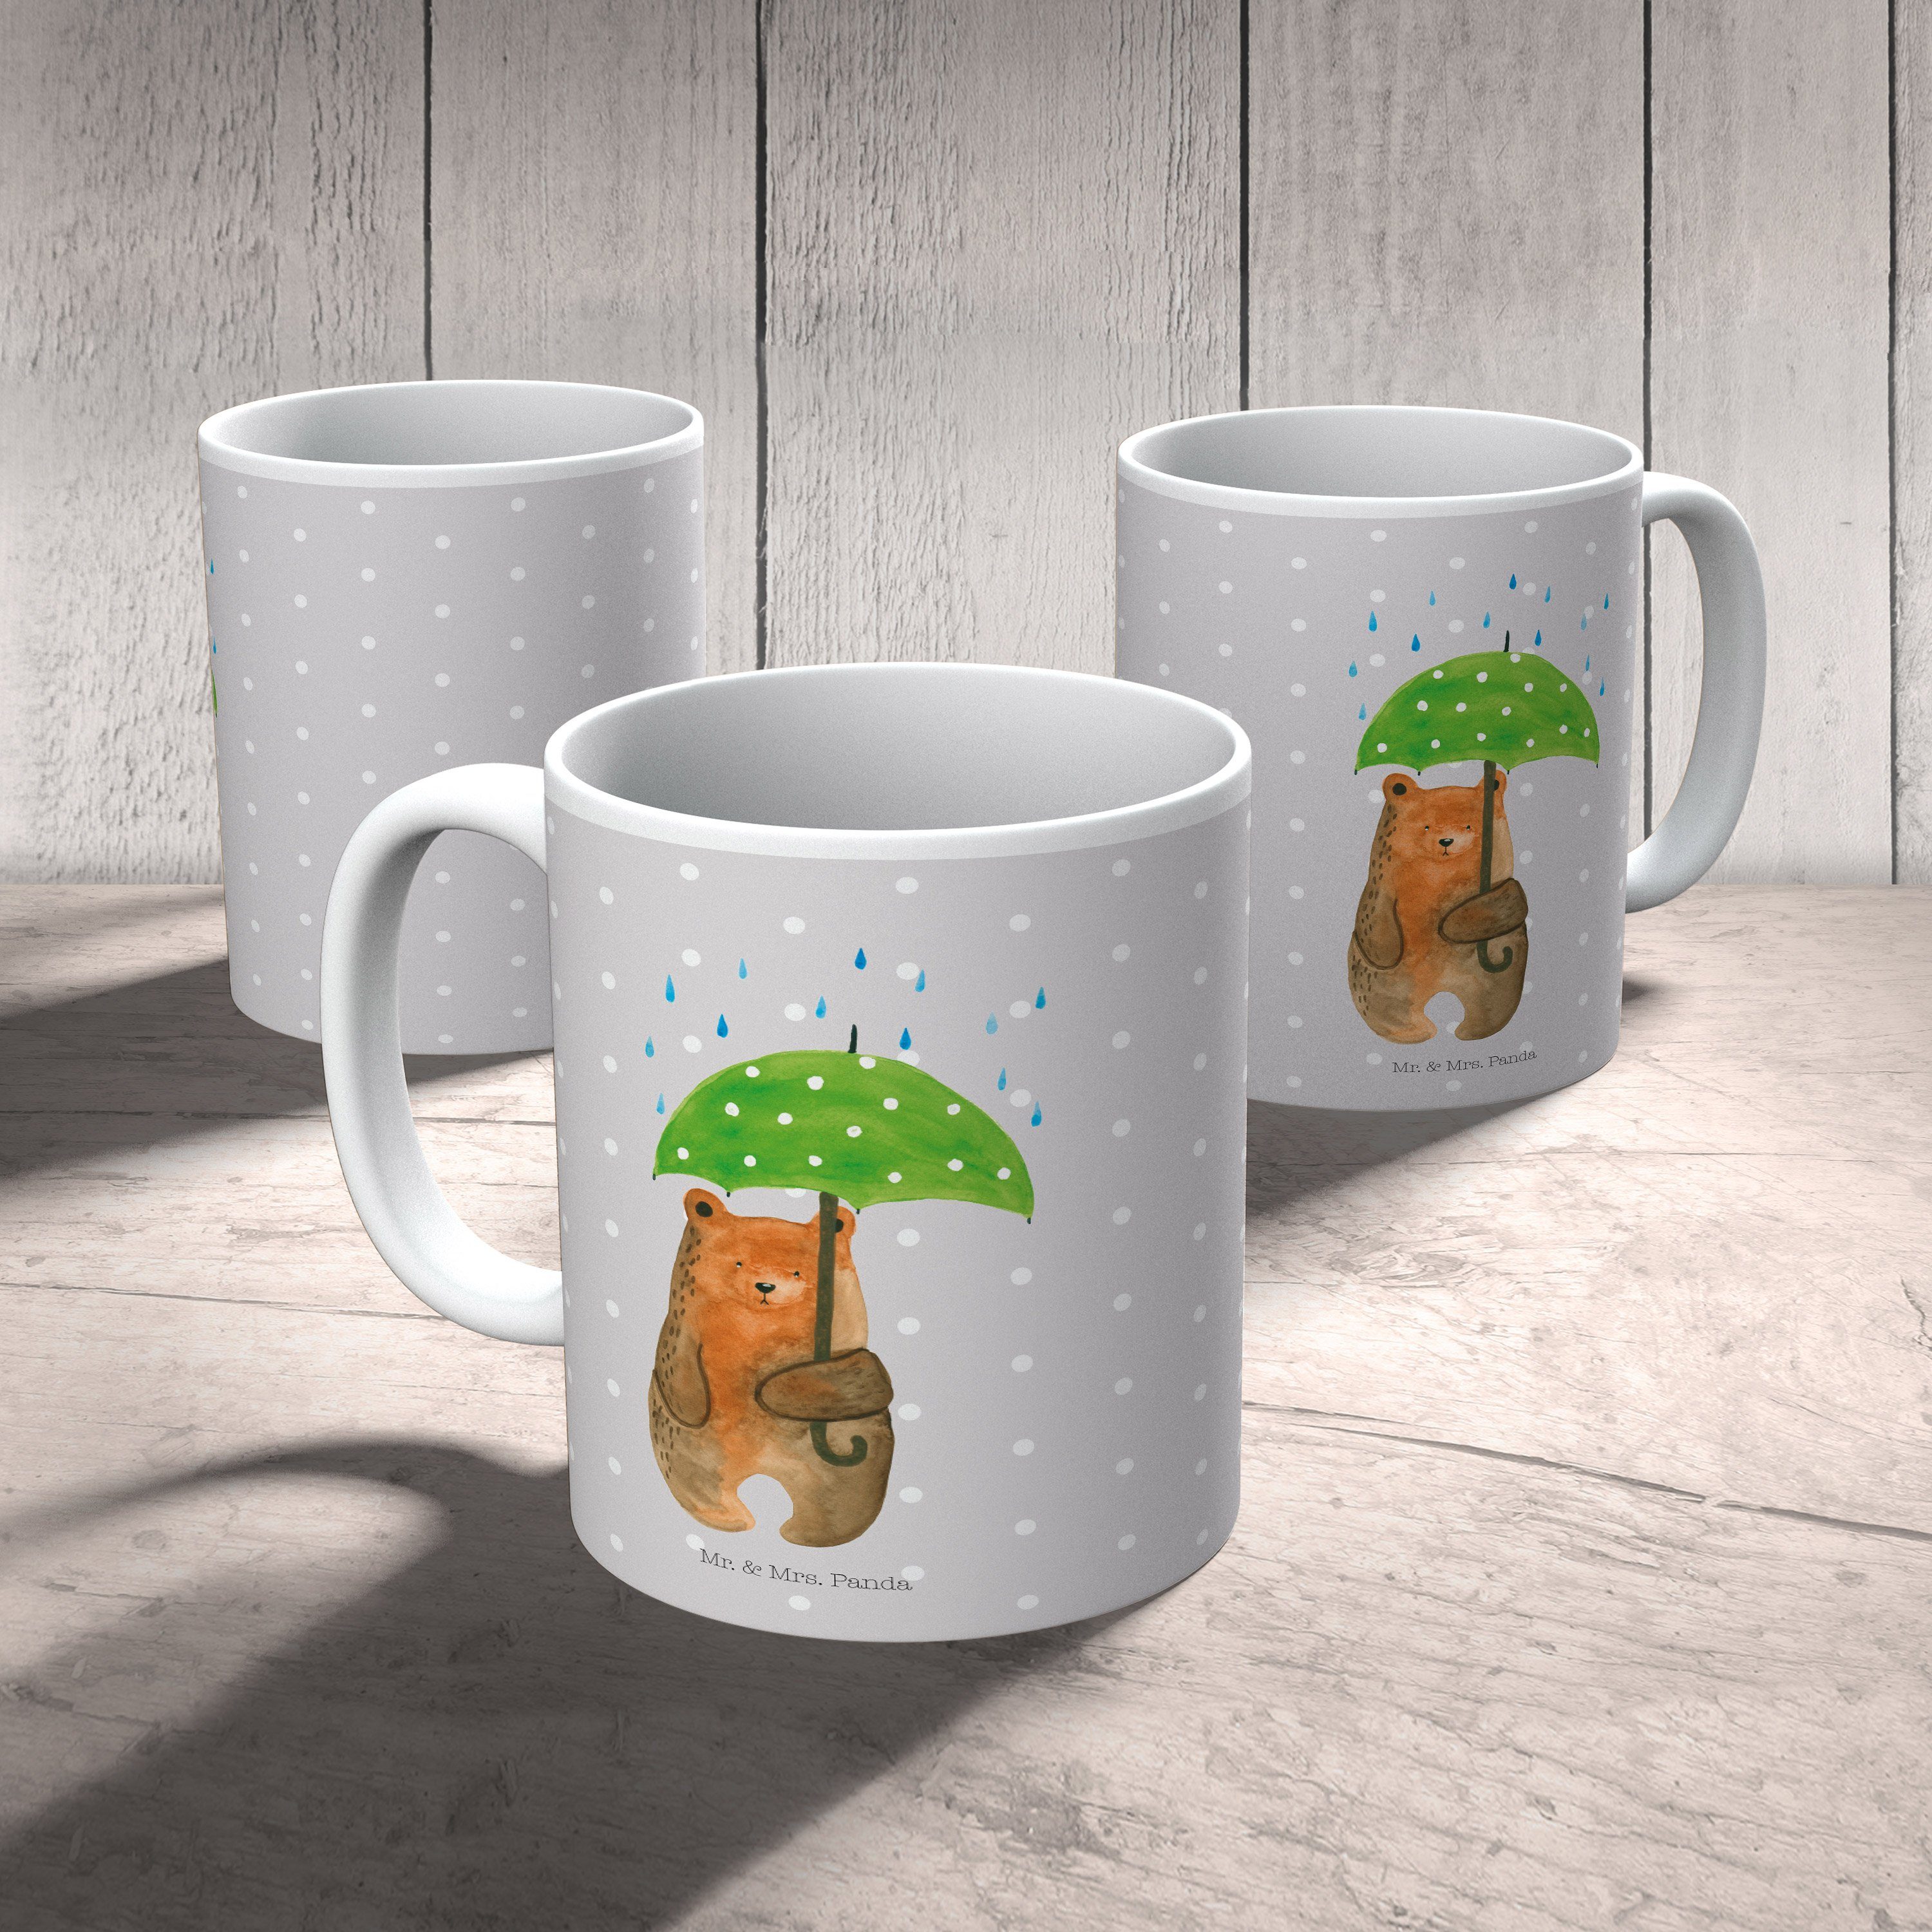 Keramik Regenschirm Mr. Mrs. Grau Geschenk, Pastell mit Spruch, Panda Kaffee, - Becher, & Bär Tasse -